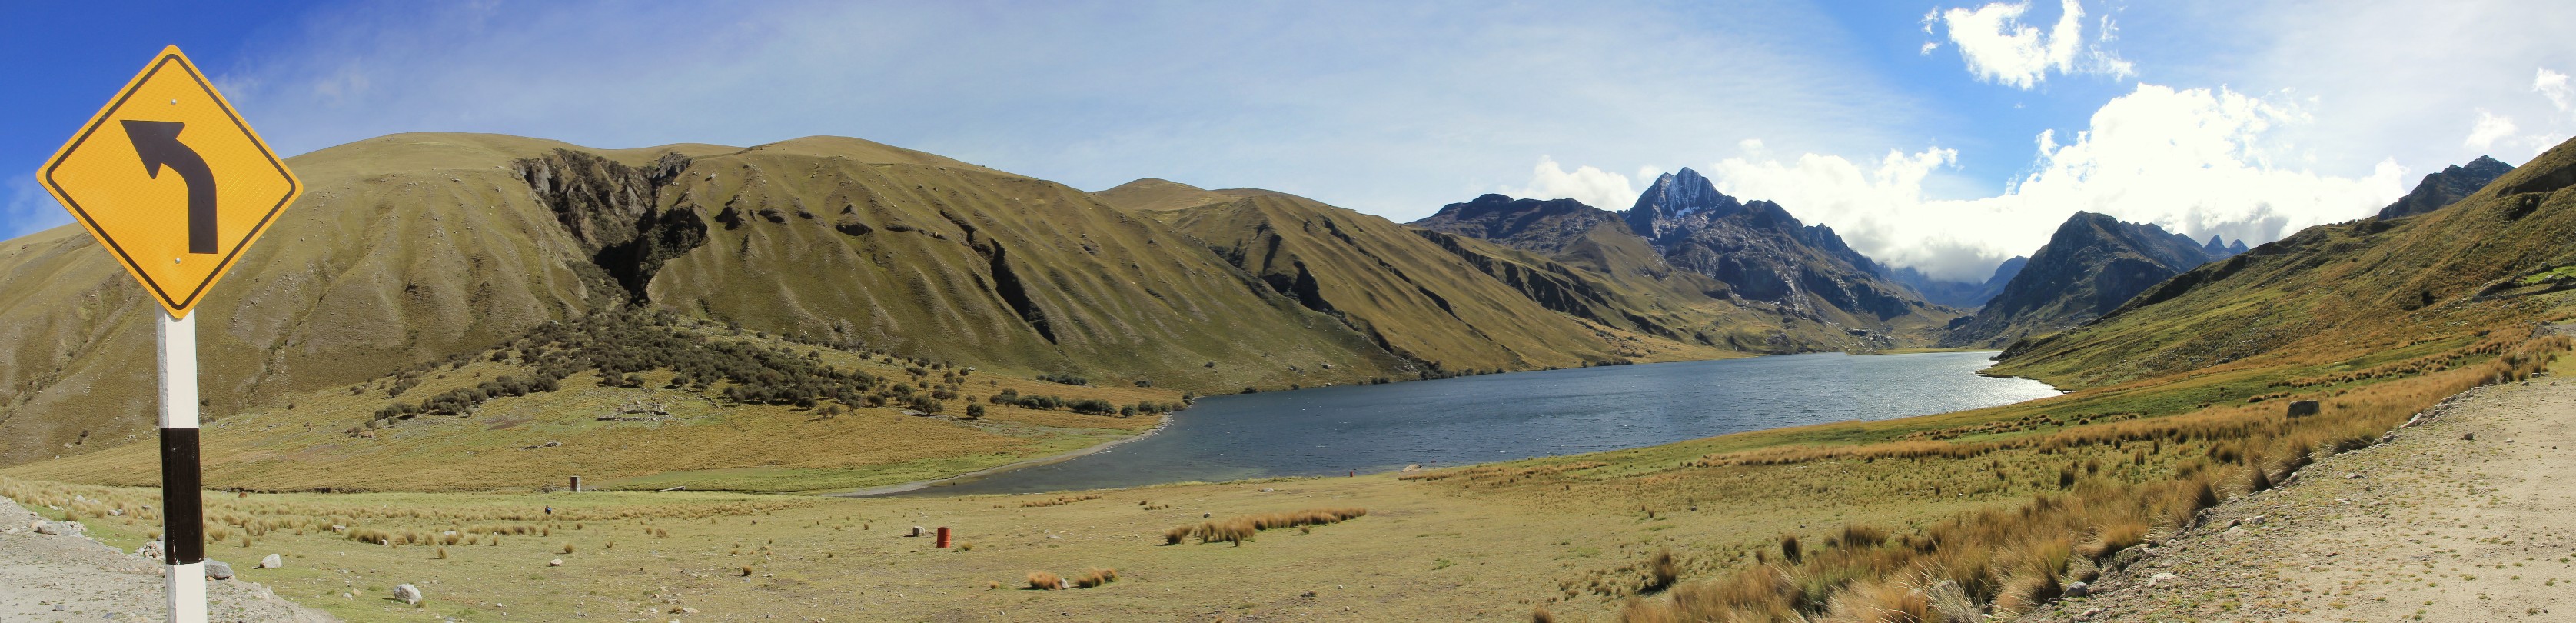 panorama-laguna02.jpg